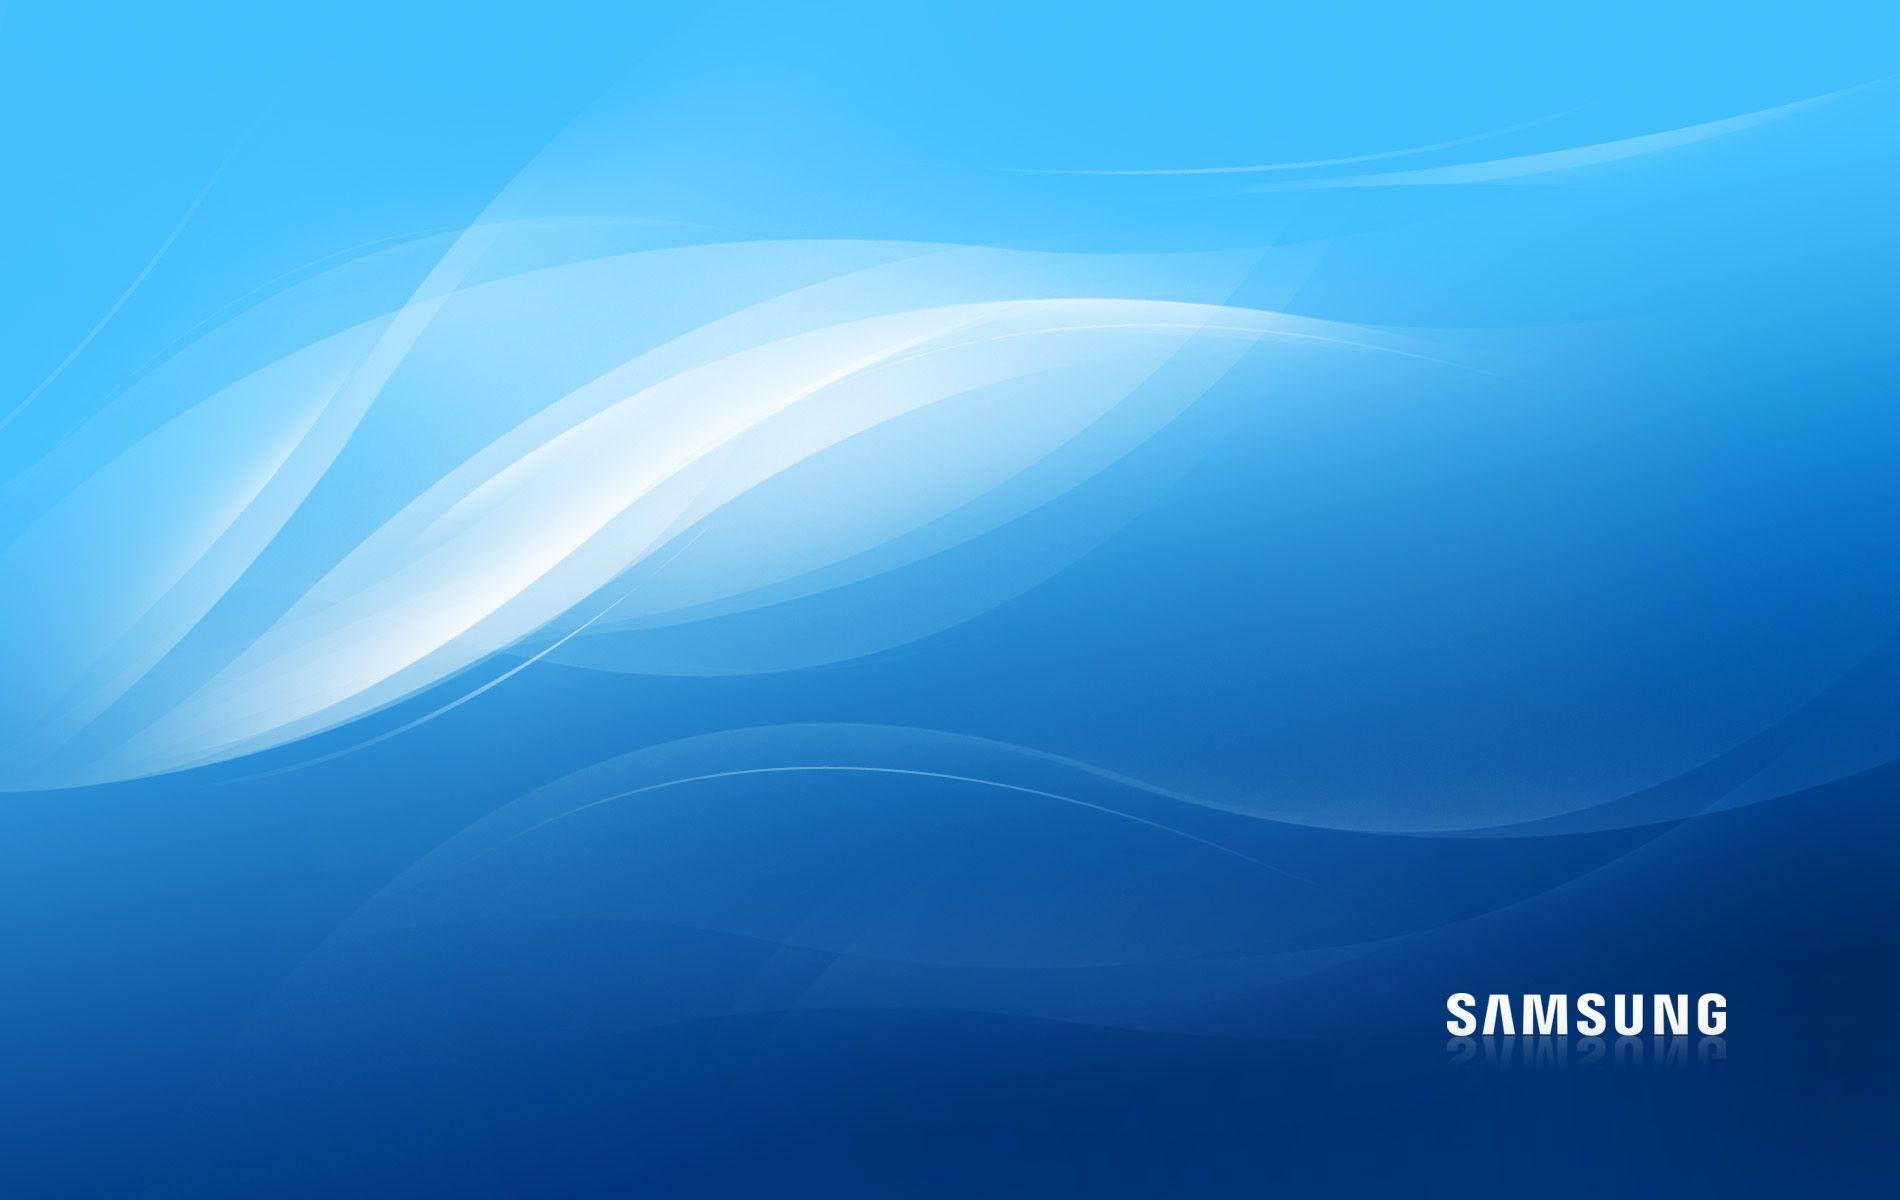 Samsung Desktop Wallpapers